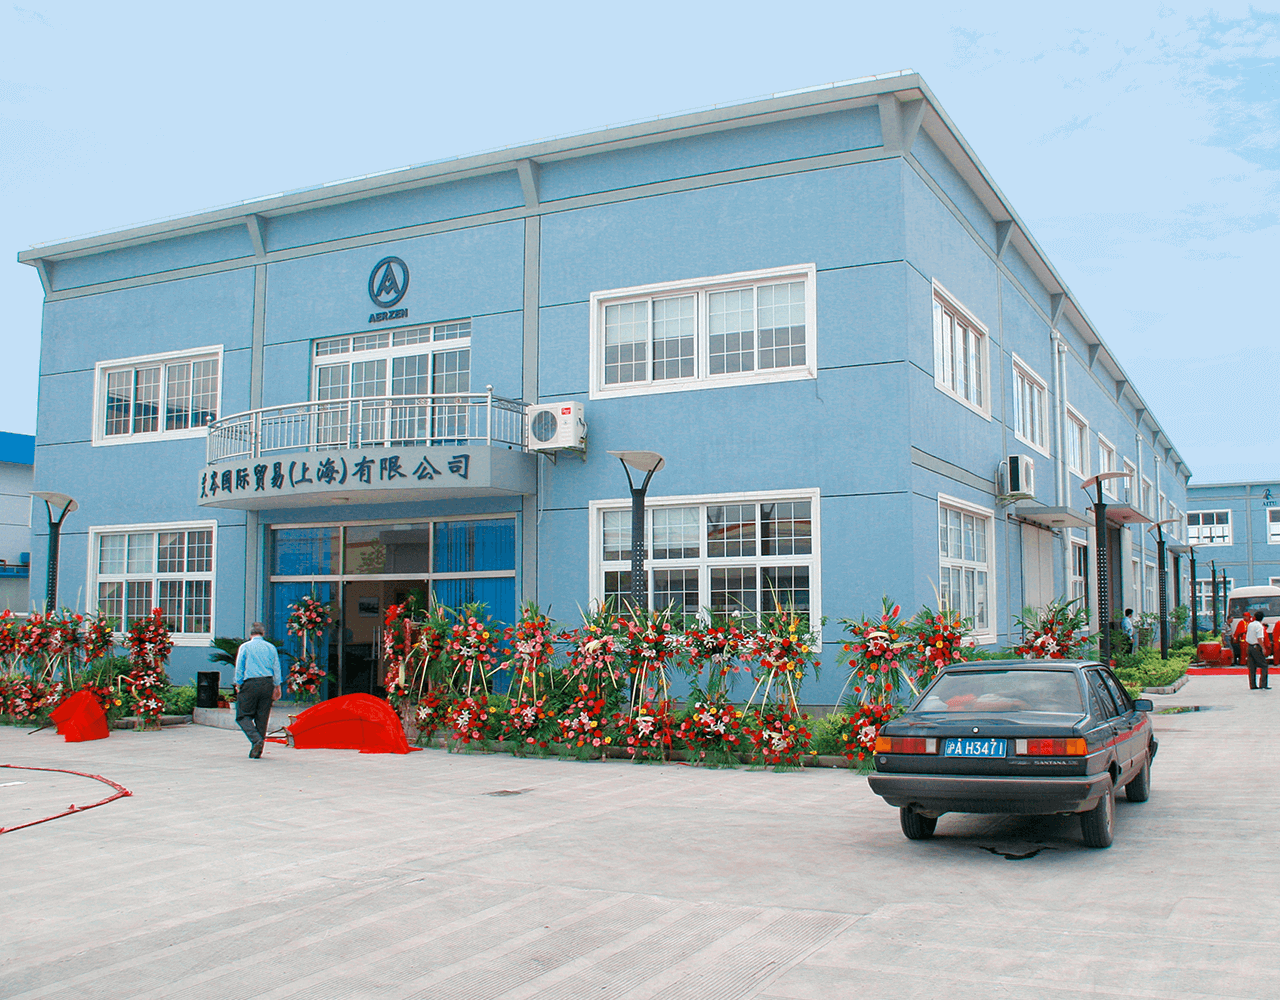 Imaginea clădirii filialei Aerzen Asia PTE.LTD.